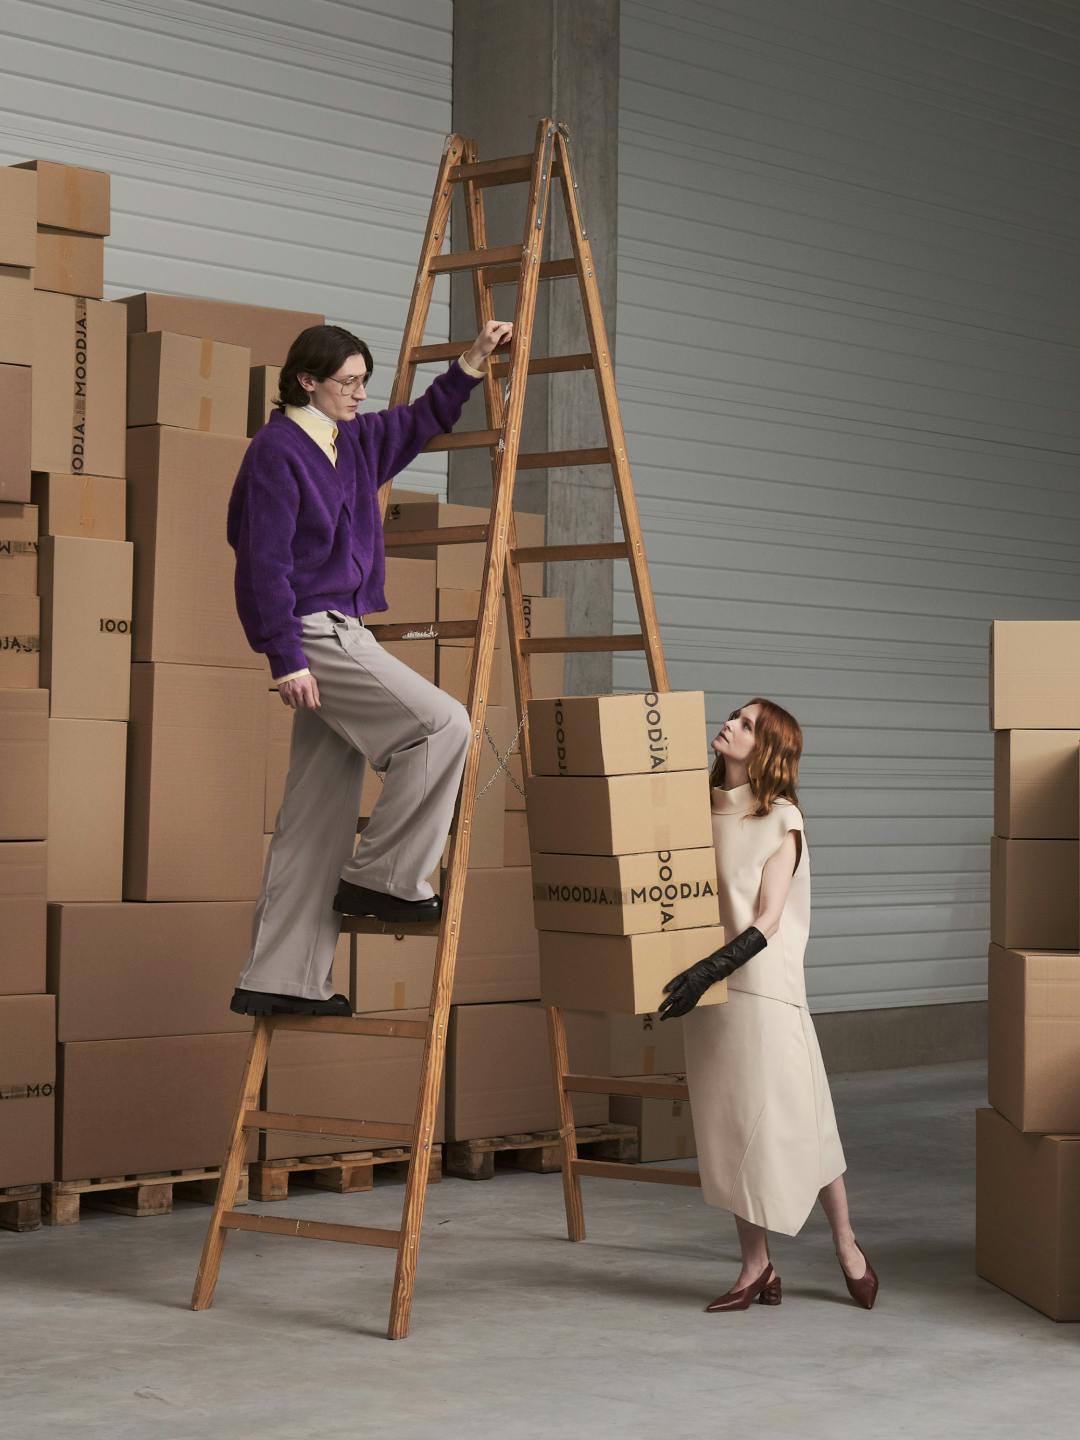 Modells tragen Kartons und klettern Leiter hinauf